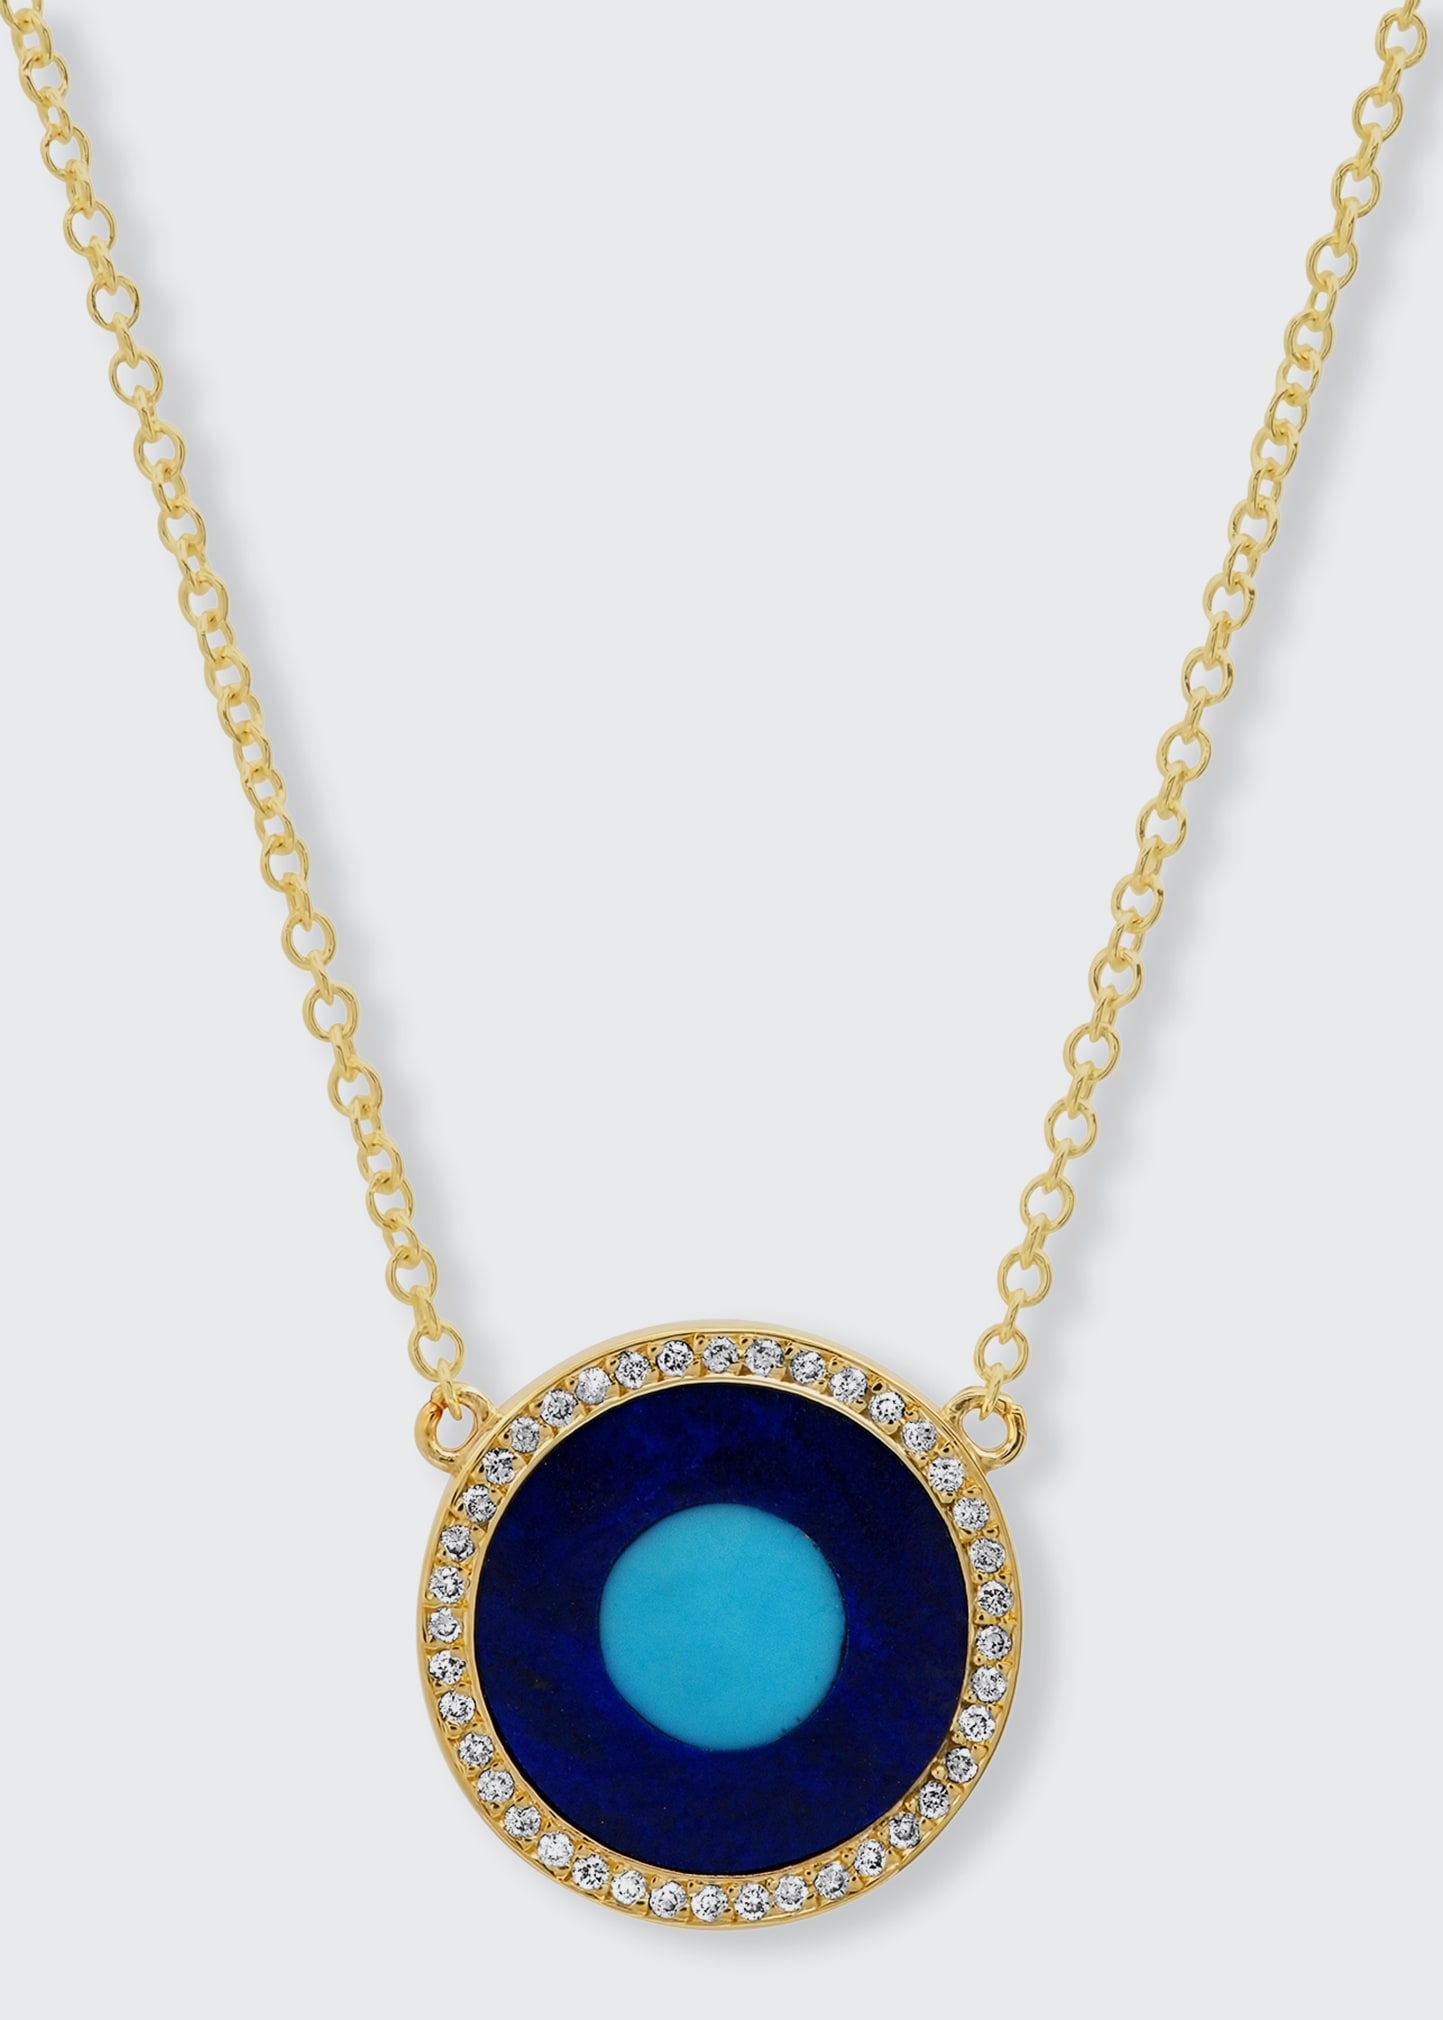 4mm rounded pendant gemstone Turquoise Necklace Yellow GOLD 14K Dainty pendant Turquoise Necklace genuine turquoise pendant